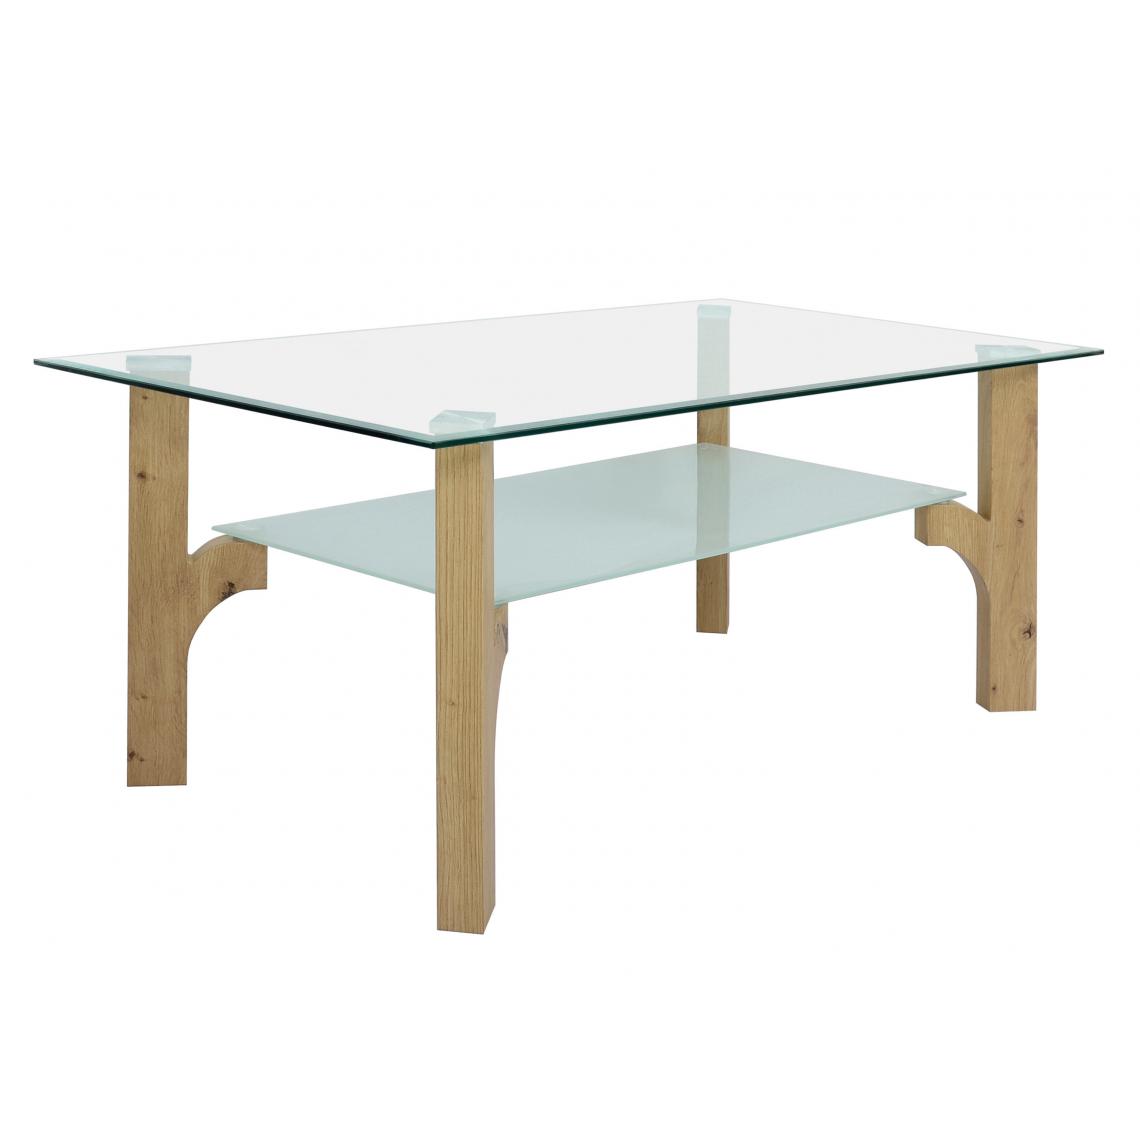 Alter - Table basse, en verre avec pieds en stratifié chêne, 110x60x45 cm - Porte-revues